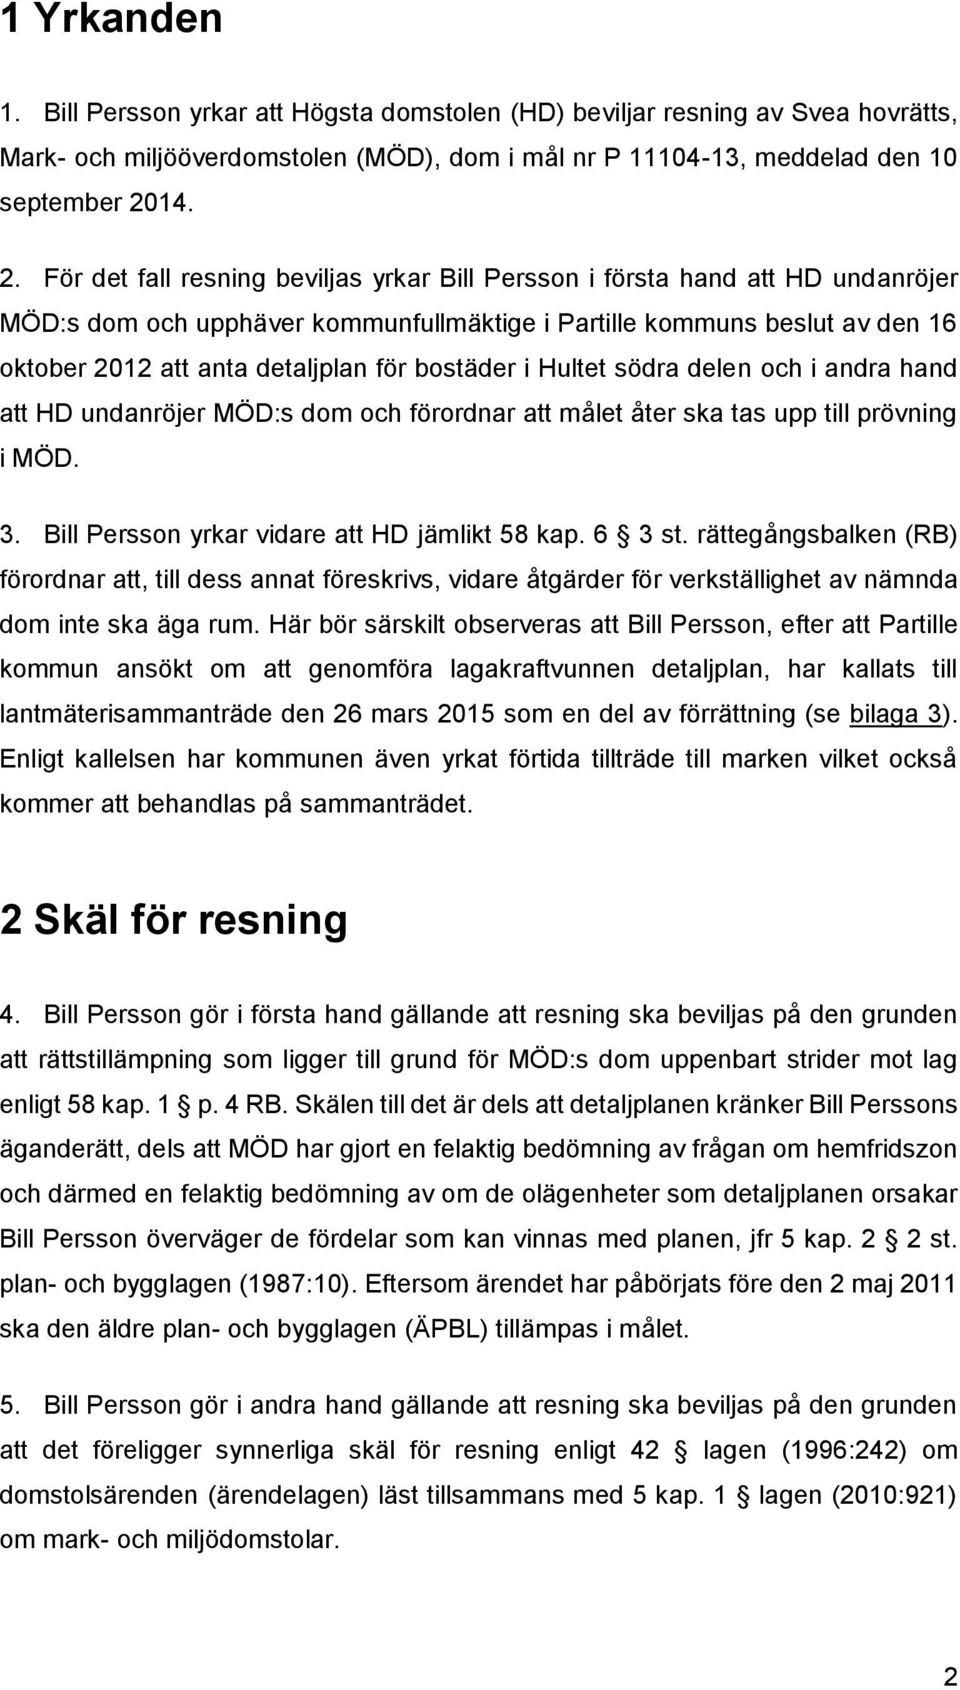 För det fall resning beviljas yrkar Bill Persson i första hand att HD undanröjer MÖD:s dom och upphäver kommunfullmäktige i Partille kommuns beslut av den 16 oktober 2012 att anta detaljplan för